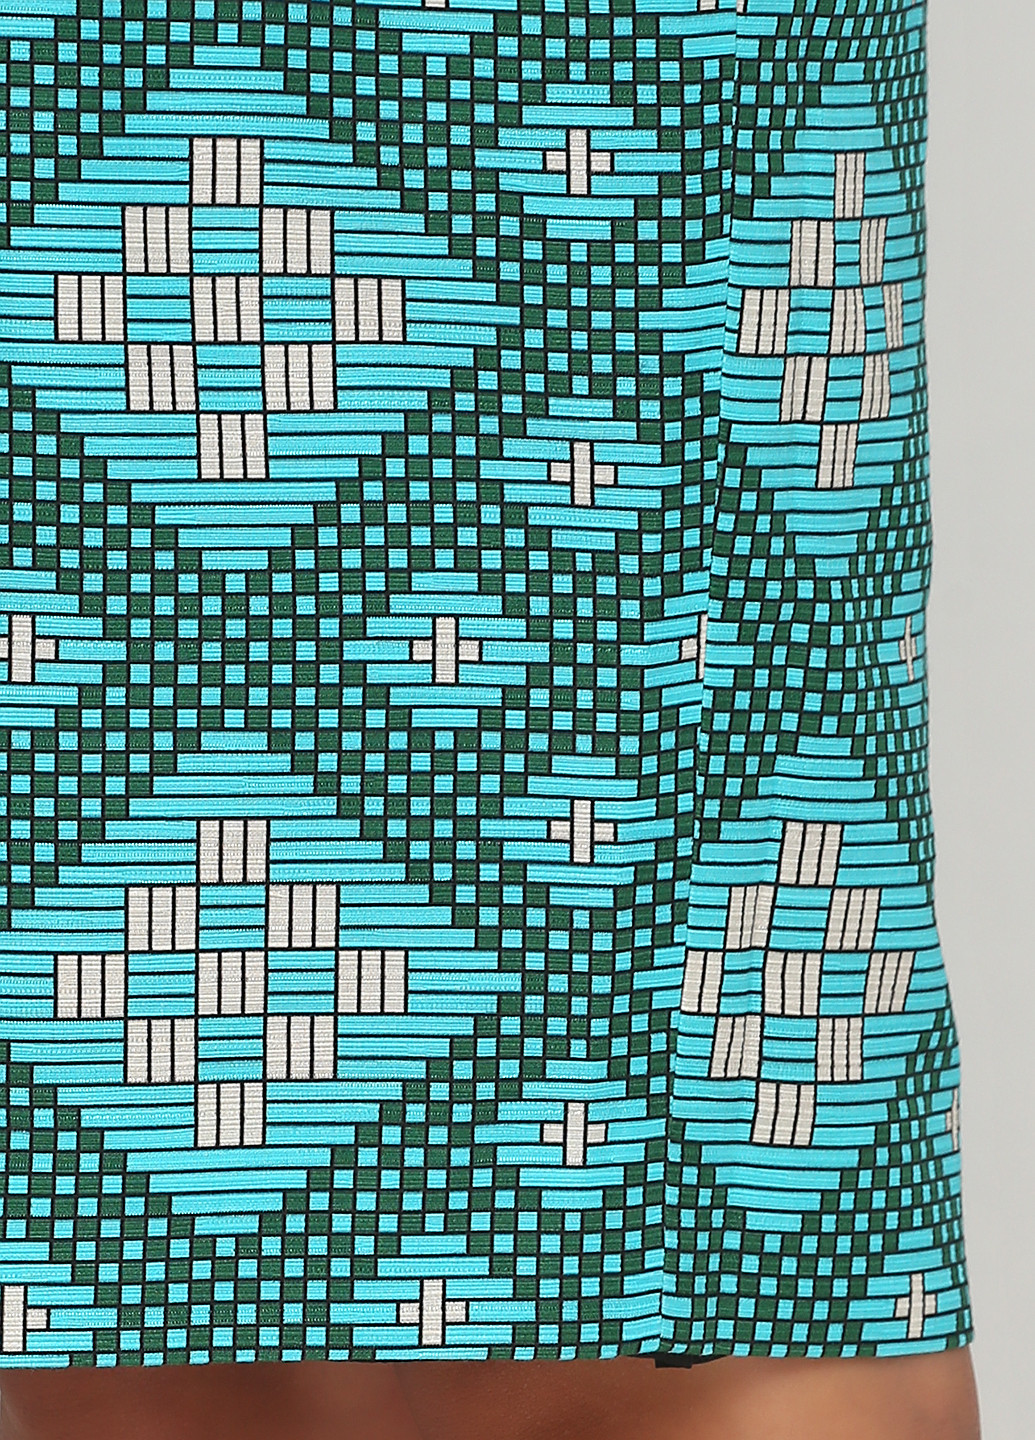 Бирюзовая кэжуал с геометрическим узором юбка Jonathan Saunders карандаш